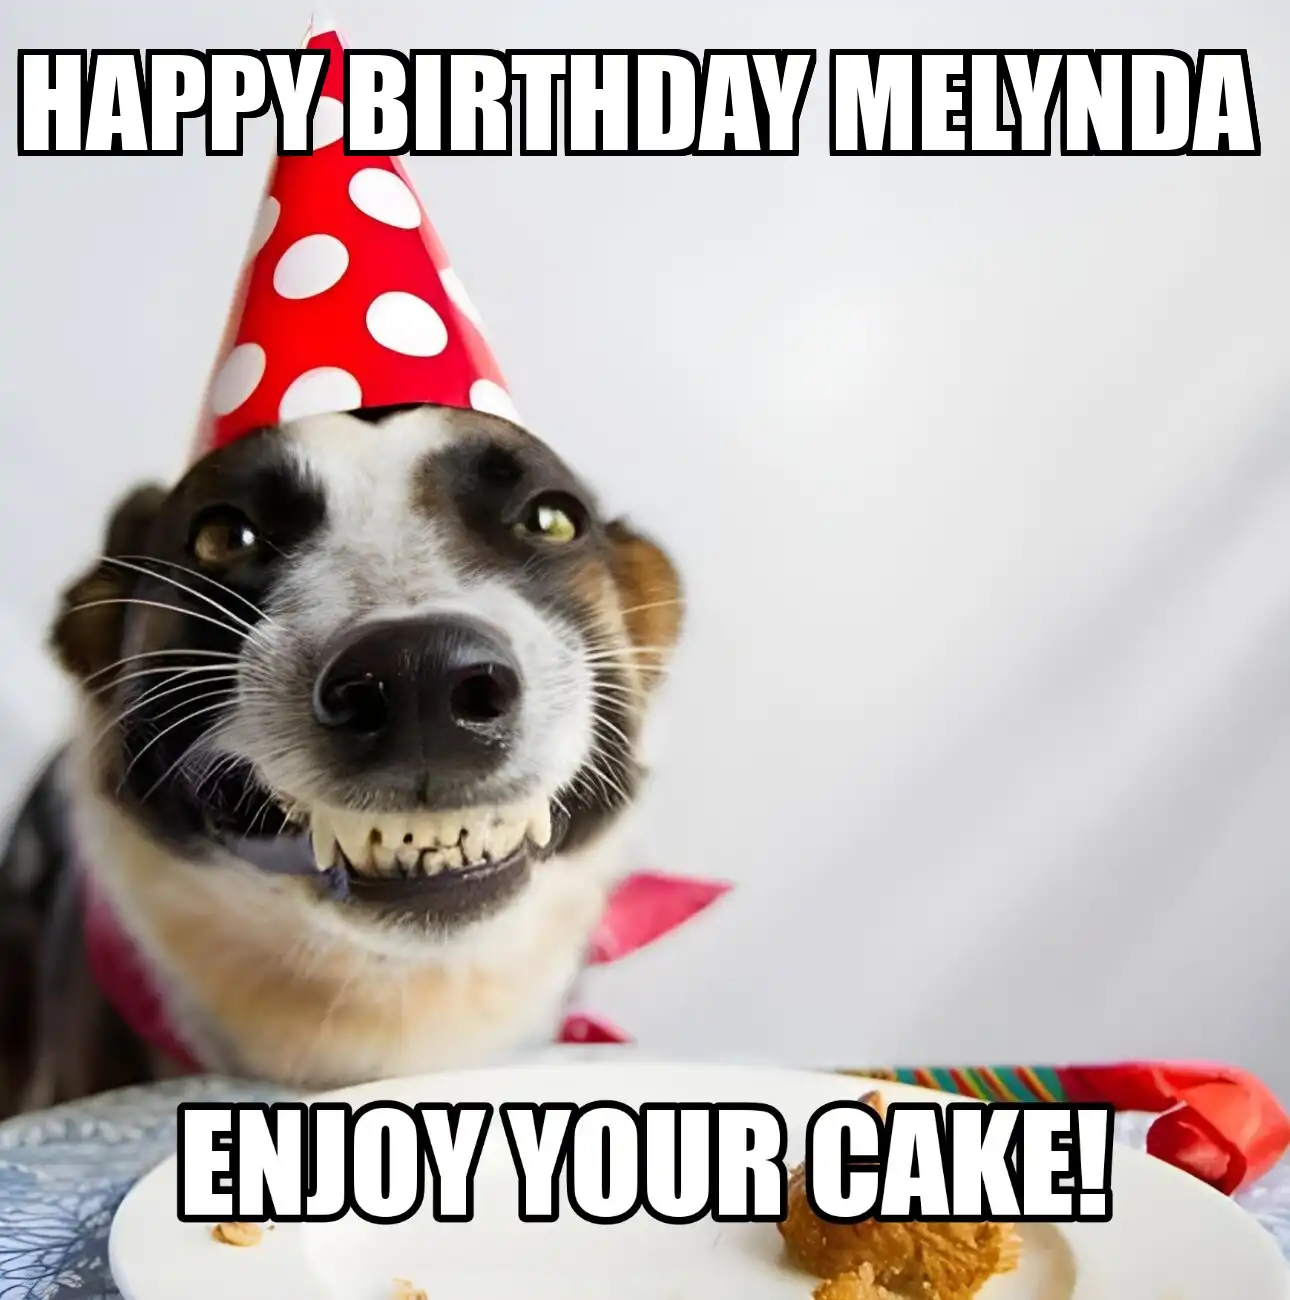 Happy Birthday Melynda Enjoy Your Cake Dog Meme